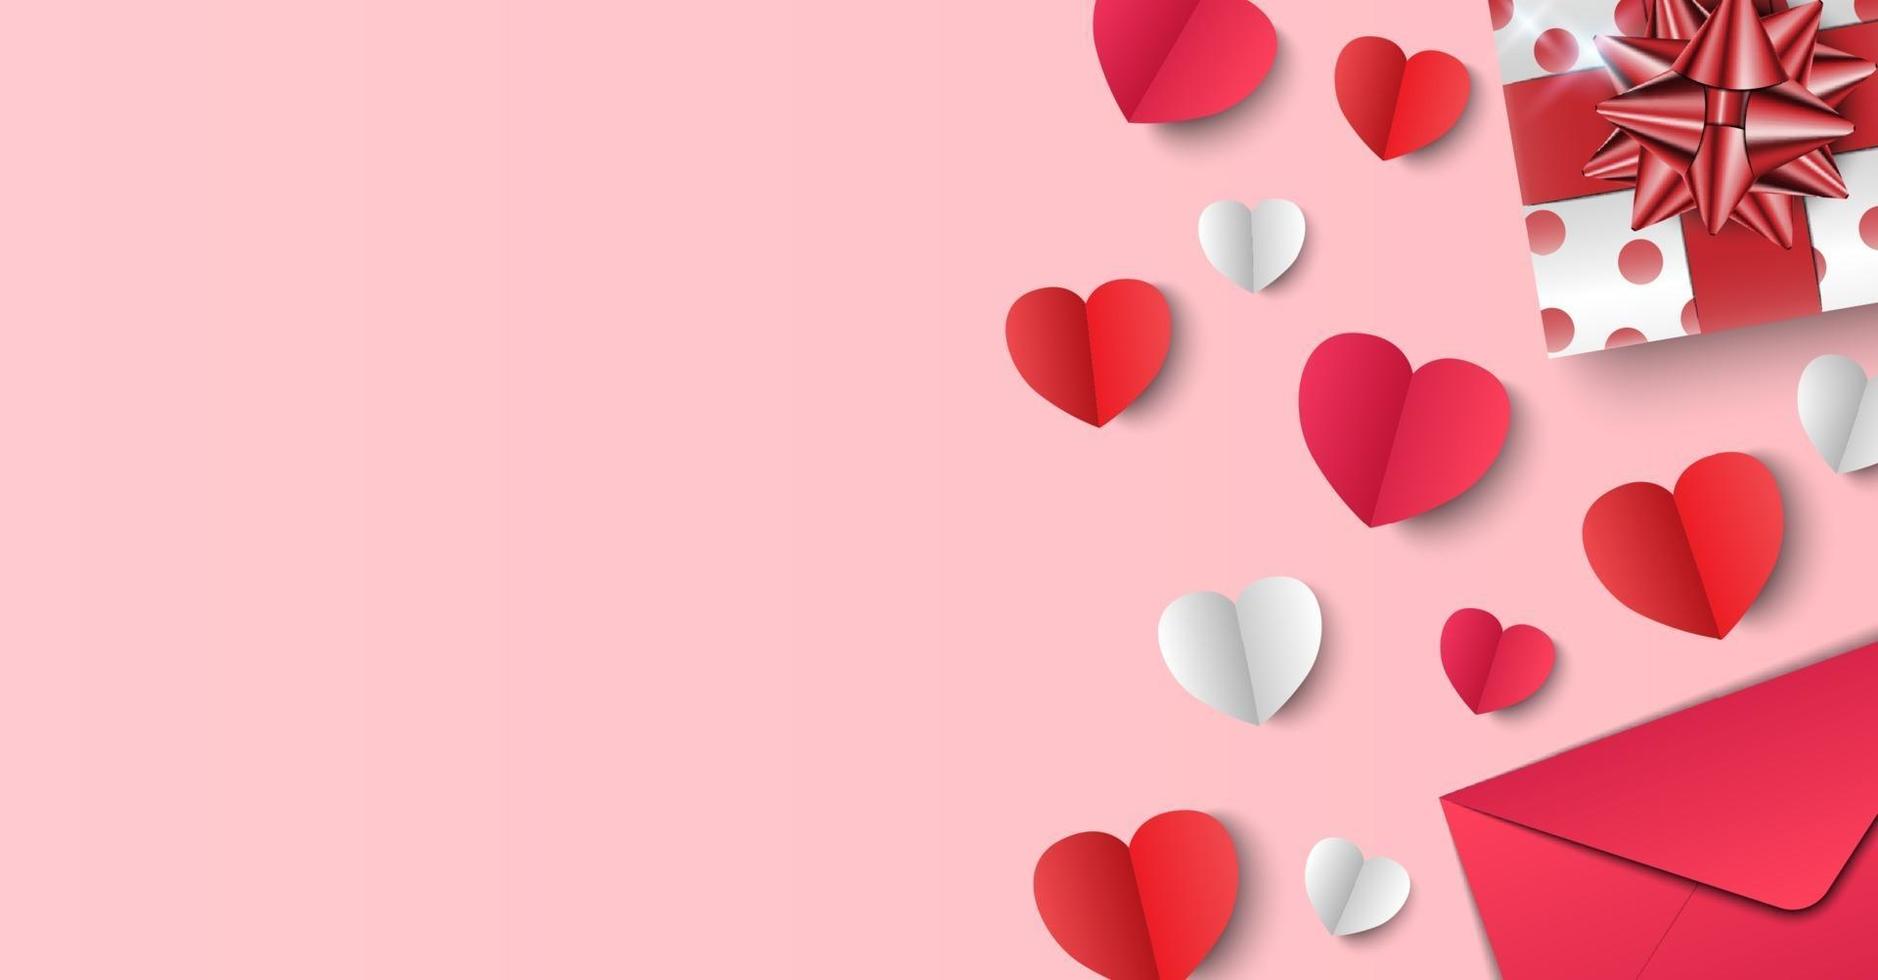 San Valentino sfondo, regali, buste e cuori di carta su sfondo rosa, illustrazione vettoriale